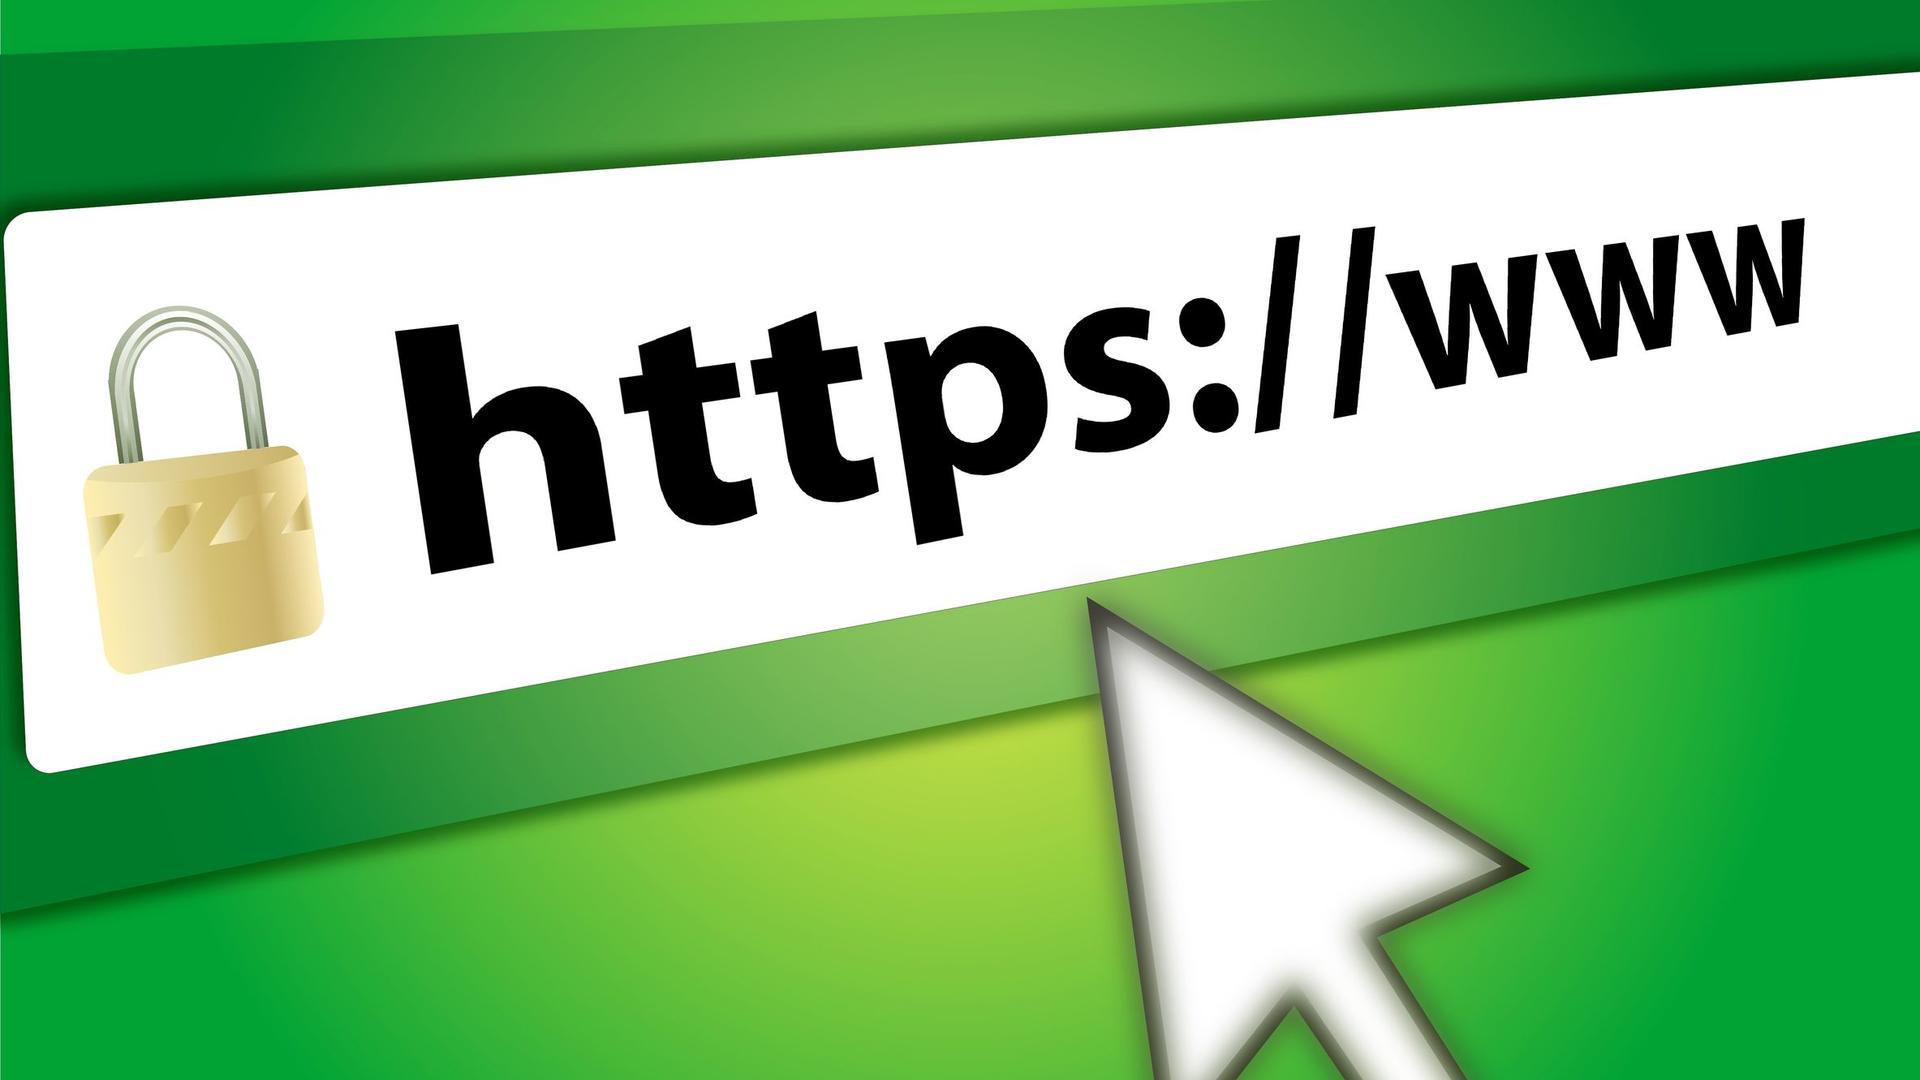 SSL - chứng chỉ bảo mật phải có cho mọi website